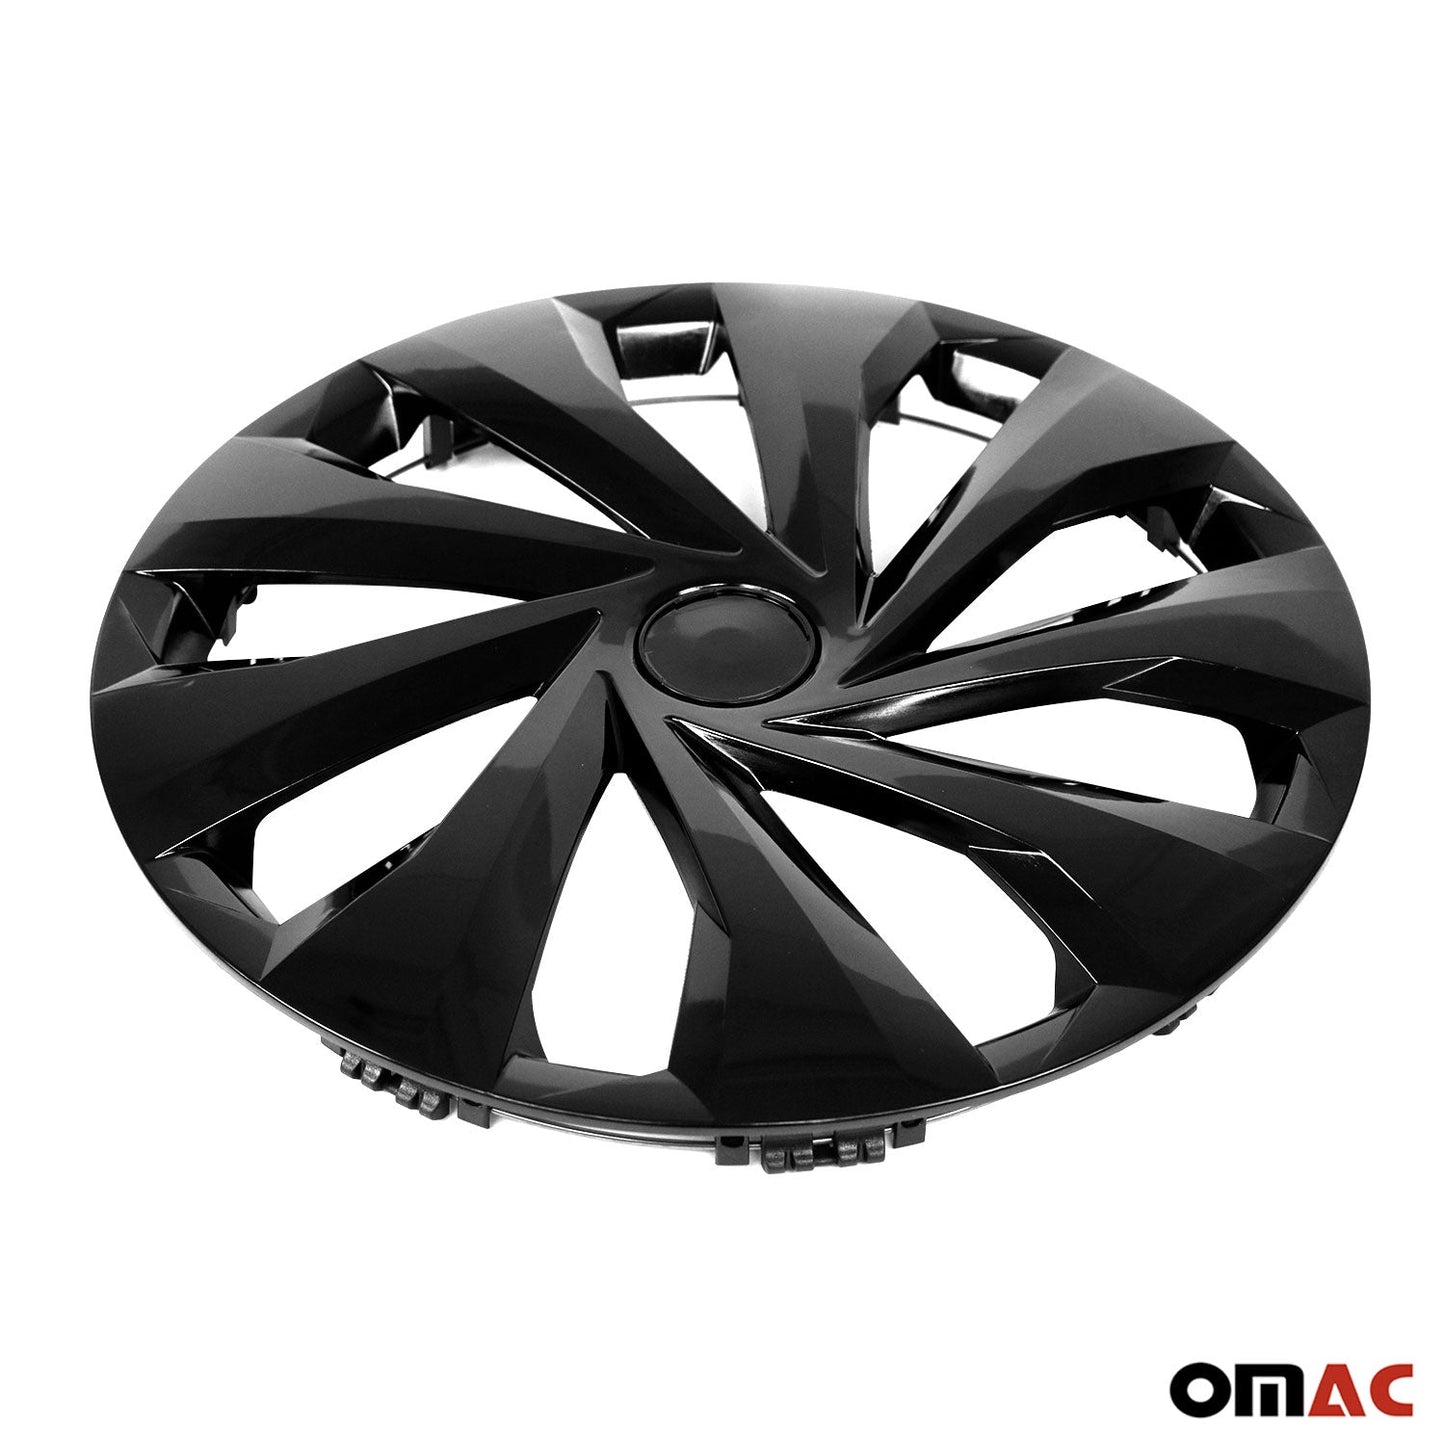 OMAC 15 Inch Wheel Rim Covers Hubcaps for Jaguar Black Gloss G002460